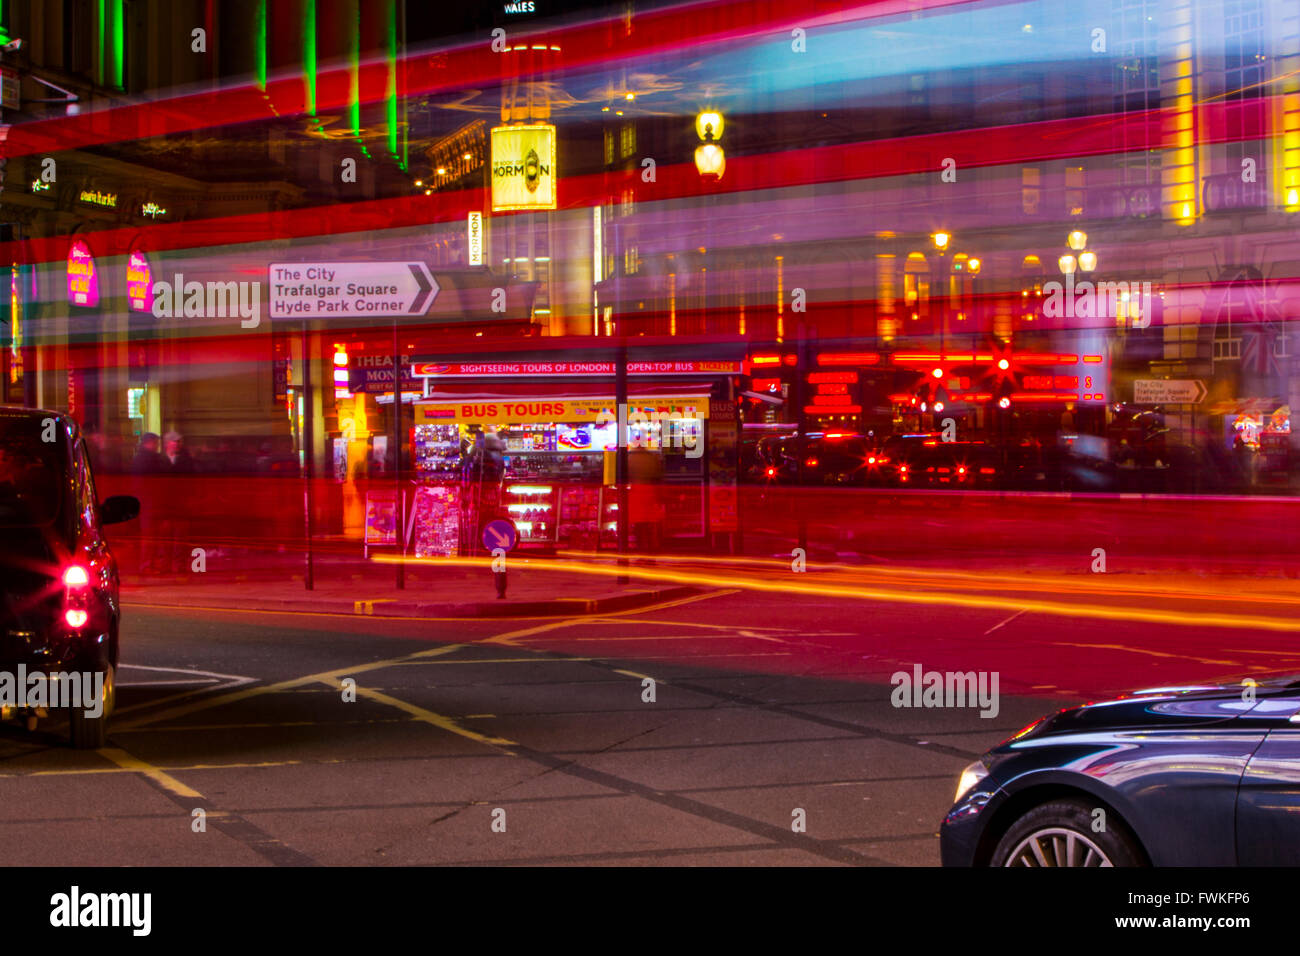 London Bus leichte Wanderwege Nacht Zeit Piccadilly Circus black Cab Taxi Langzeitbelichtung Stockfoto